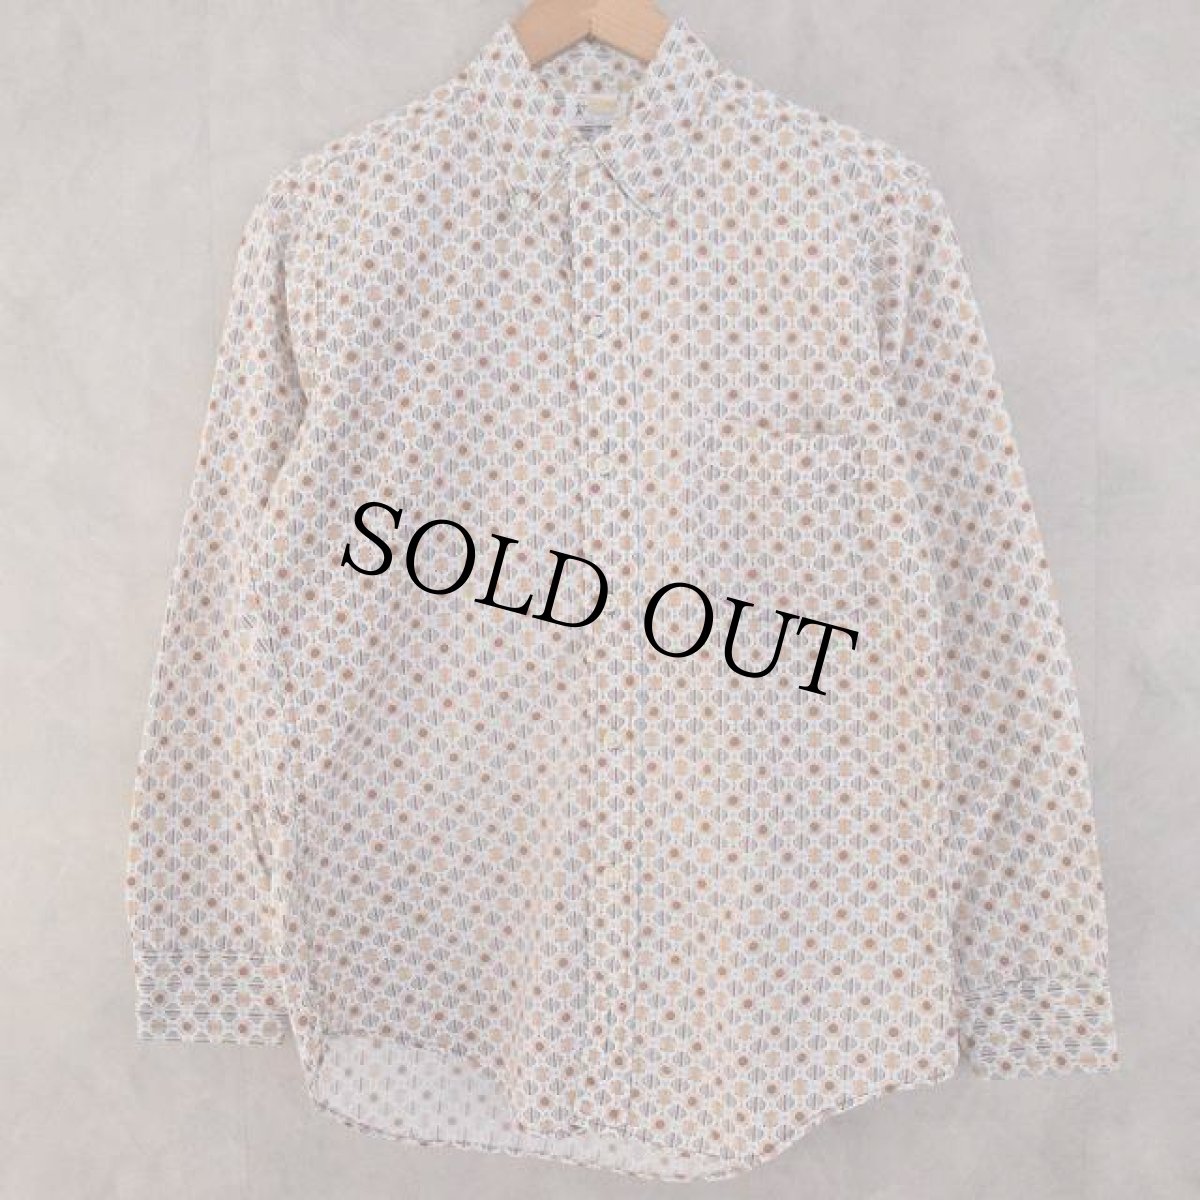 画像1: ▼【SALE】 60's BUD BERMA USA製 Cotton Shirt (1)